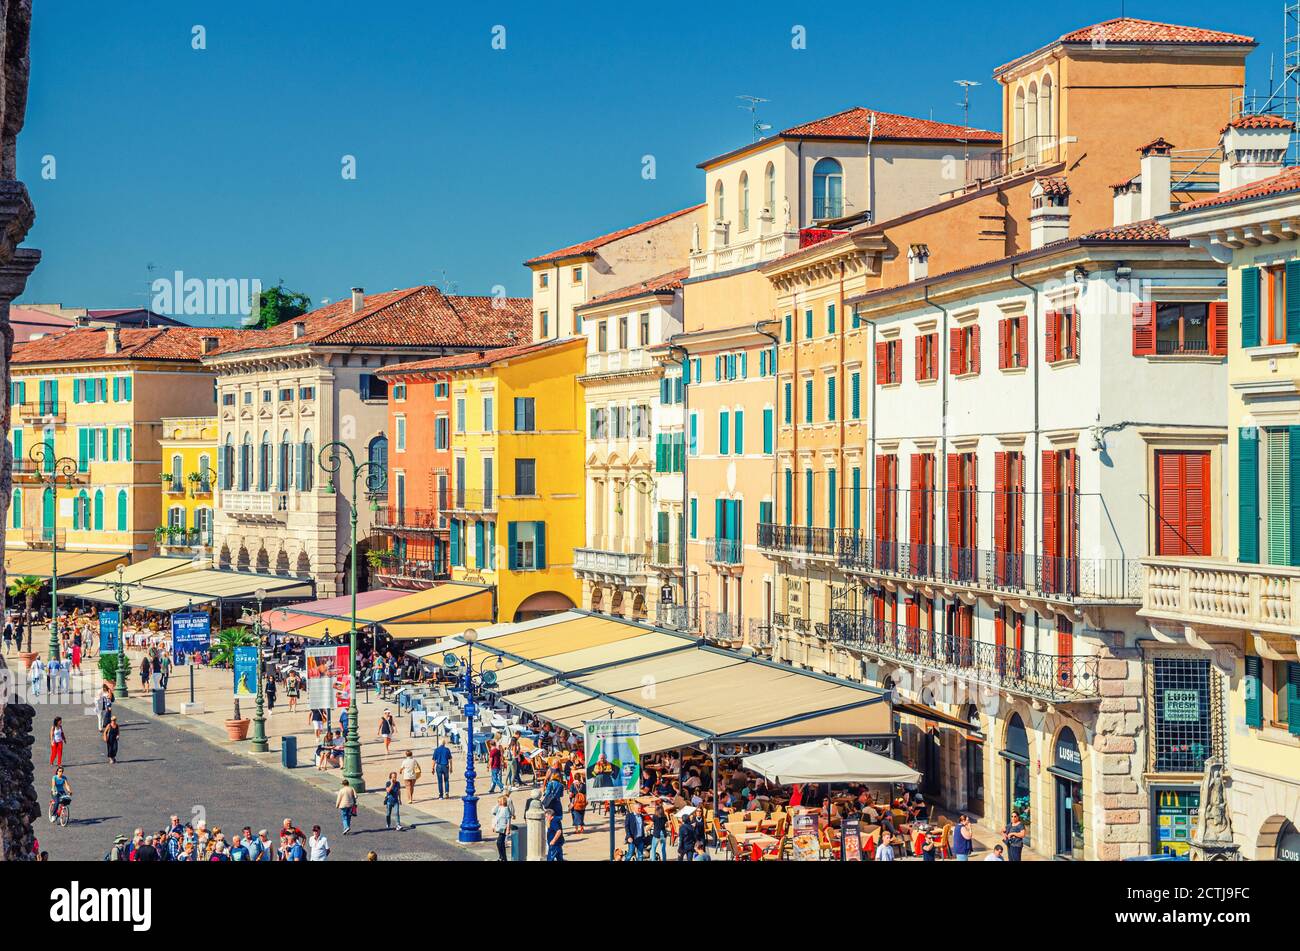 Verona, Italia, 12 de septiembre de 2019: Fila de viejos edificios coloridos y coloridos en la plaza Piazza Bra en el centro histórico de la ciudad, cafés y restaurantes con tiendas de campaña y turistas caminando, vista aérea Foto de stock